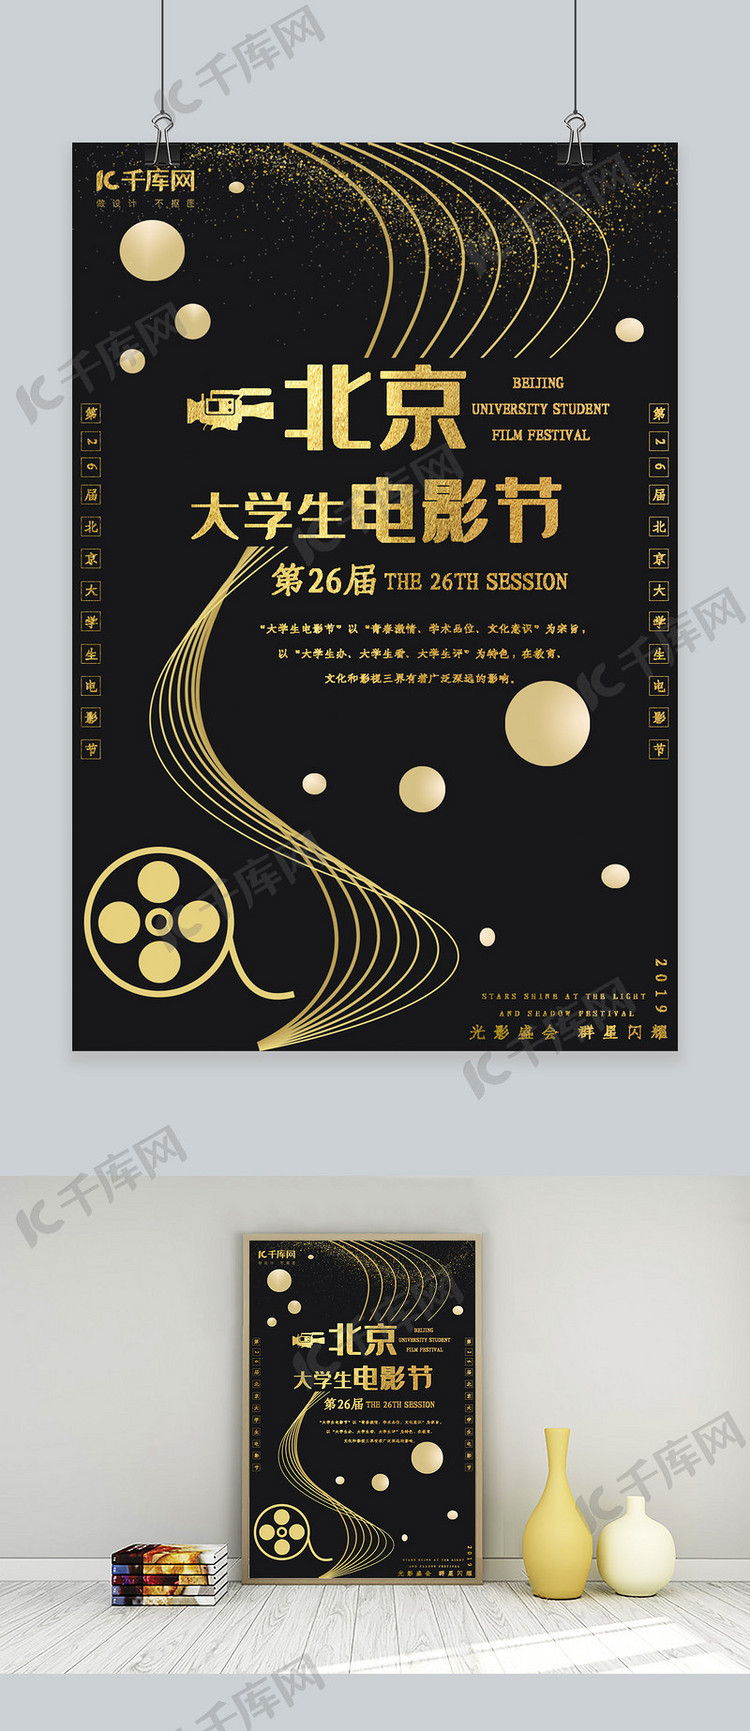 北京大学生电影节宣传海报